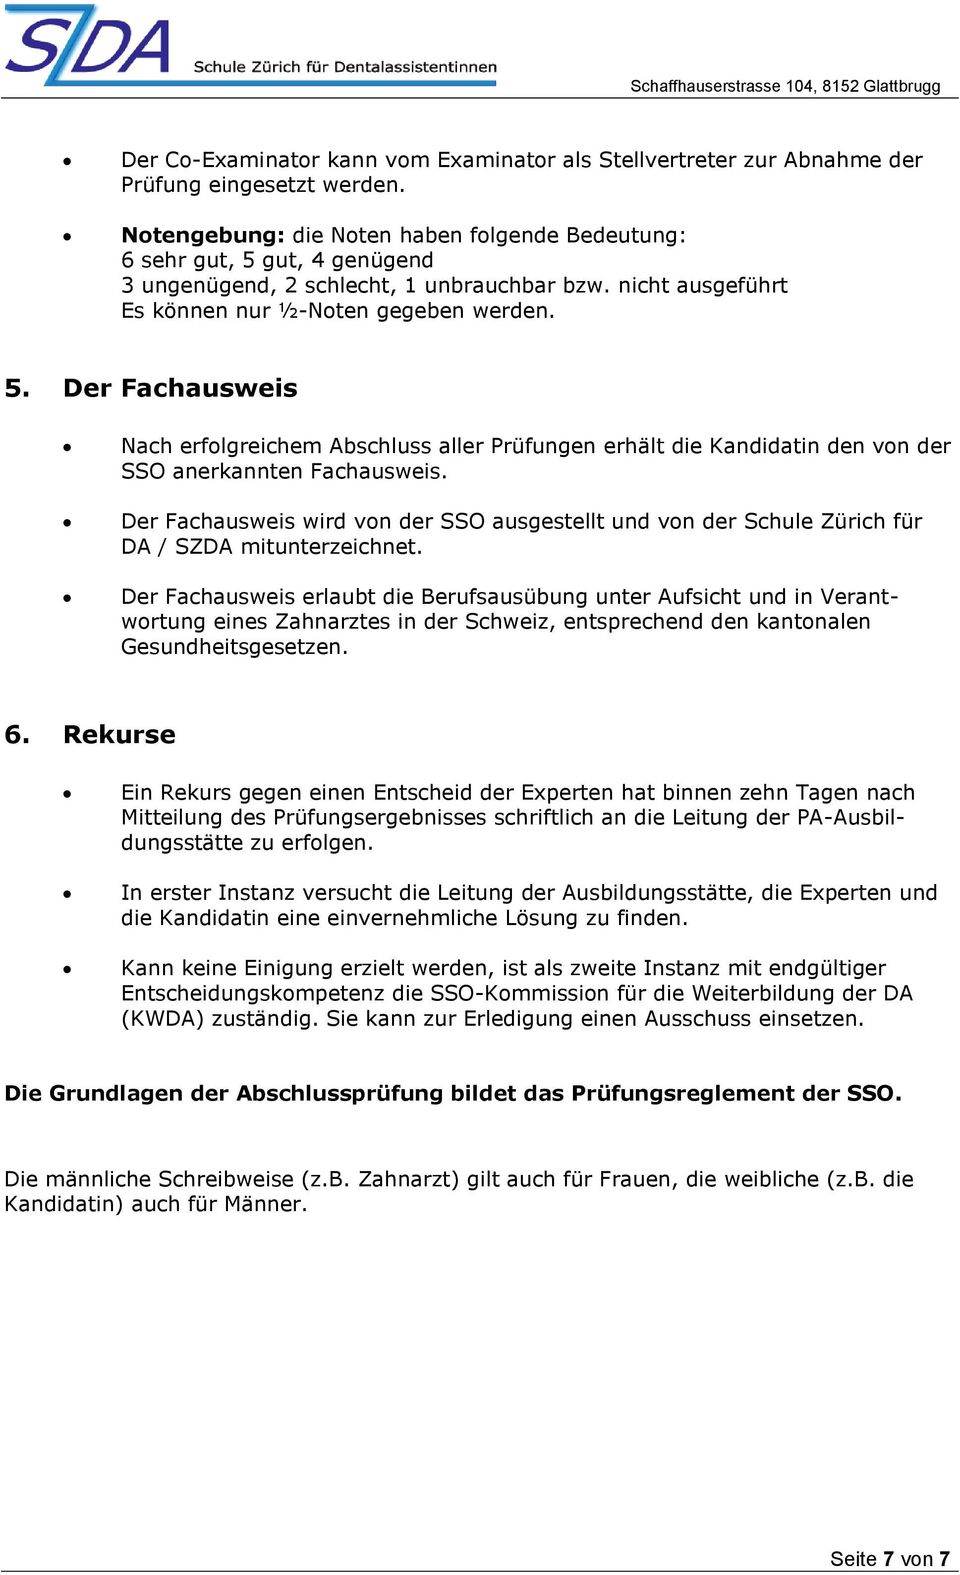 Der Fachausweis wird von der SSO ausgestellt und von der Schule Zürich für DA / SZDA mitunterzeichnet.